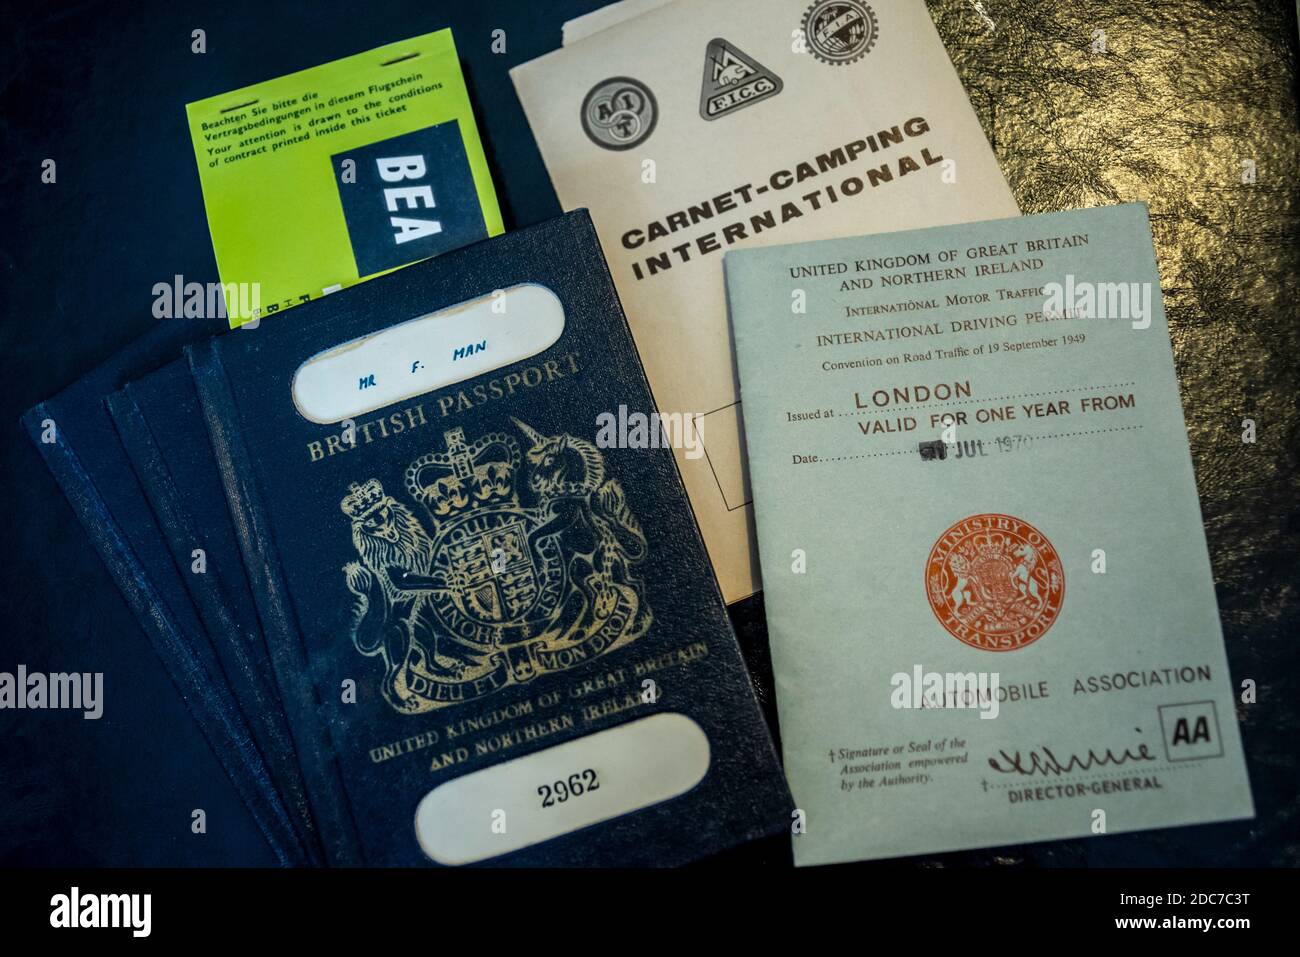 BEA, British European Airways, flight ticket (copy) inside old dark blue or black British passport and international driving permits, on briefcase Stock Photo